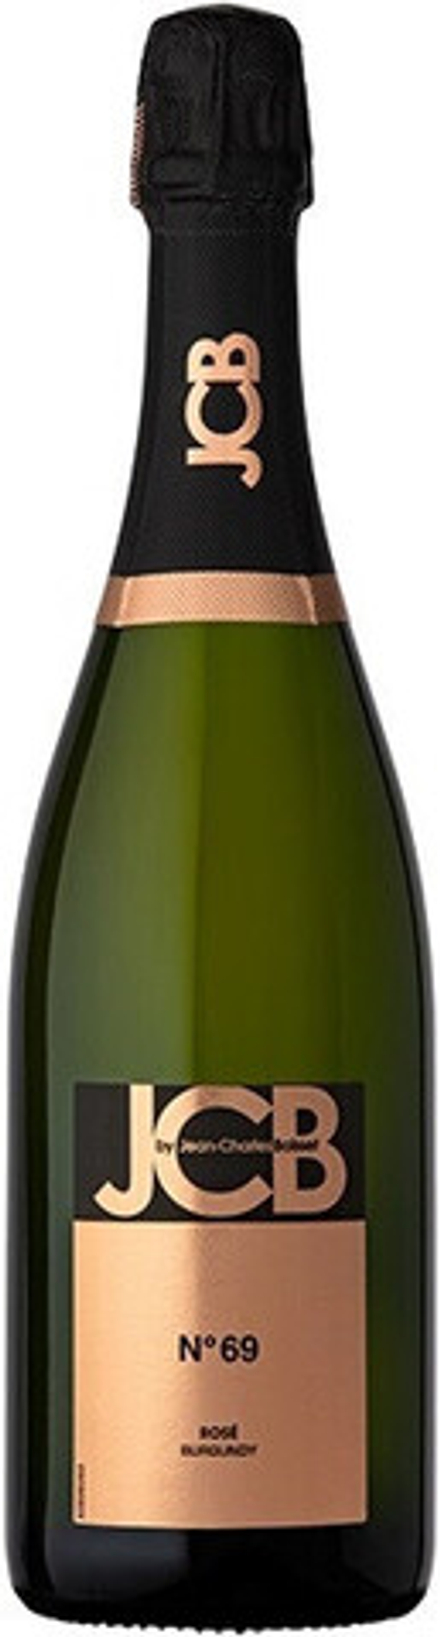 Игристое вино Cremant de Bourgogne JCB №69 Rose Brut, 0,75 л.